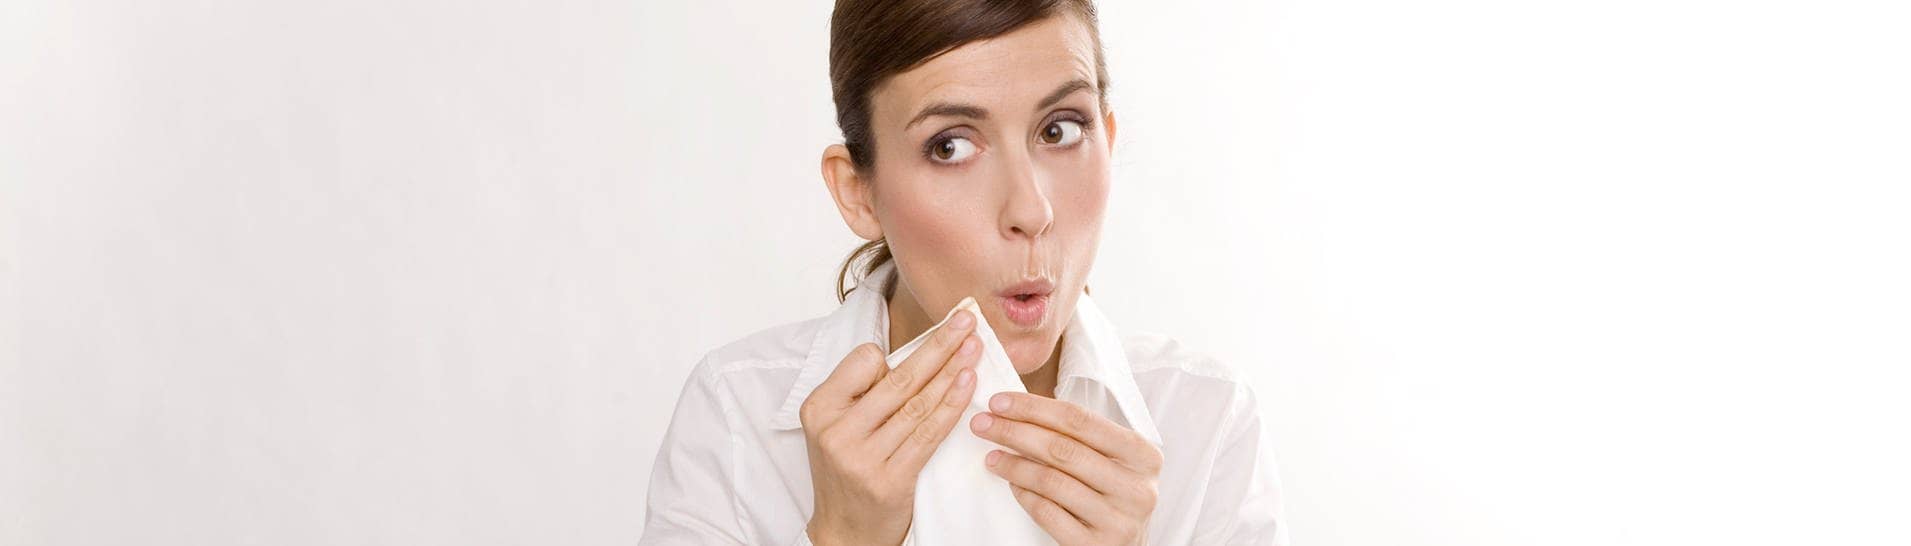 Junge Frau tupft sich beim Essen mit der Serviette den Mund ab